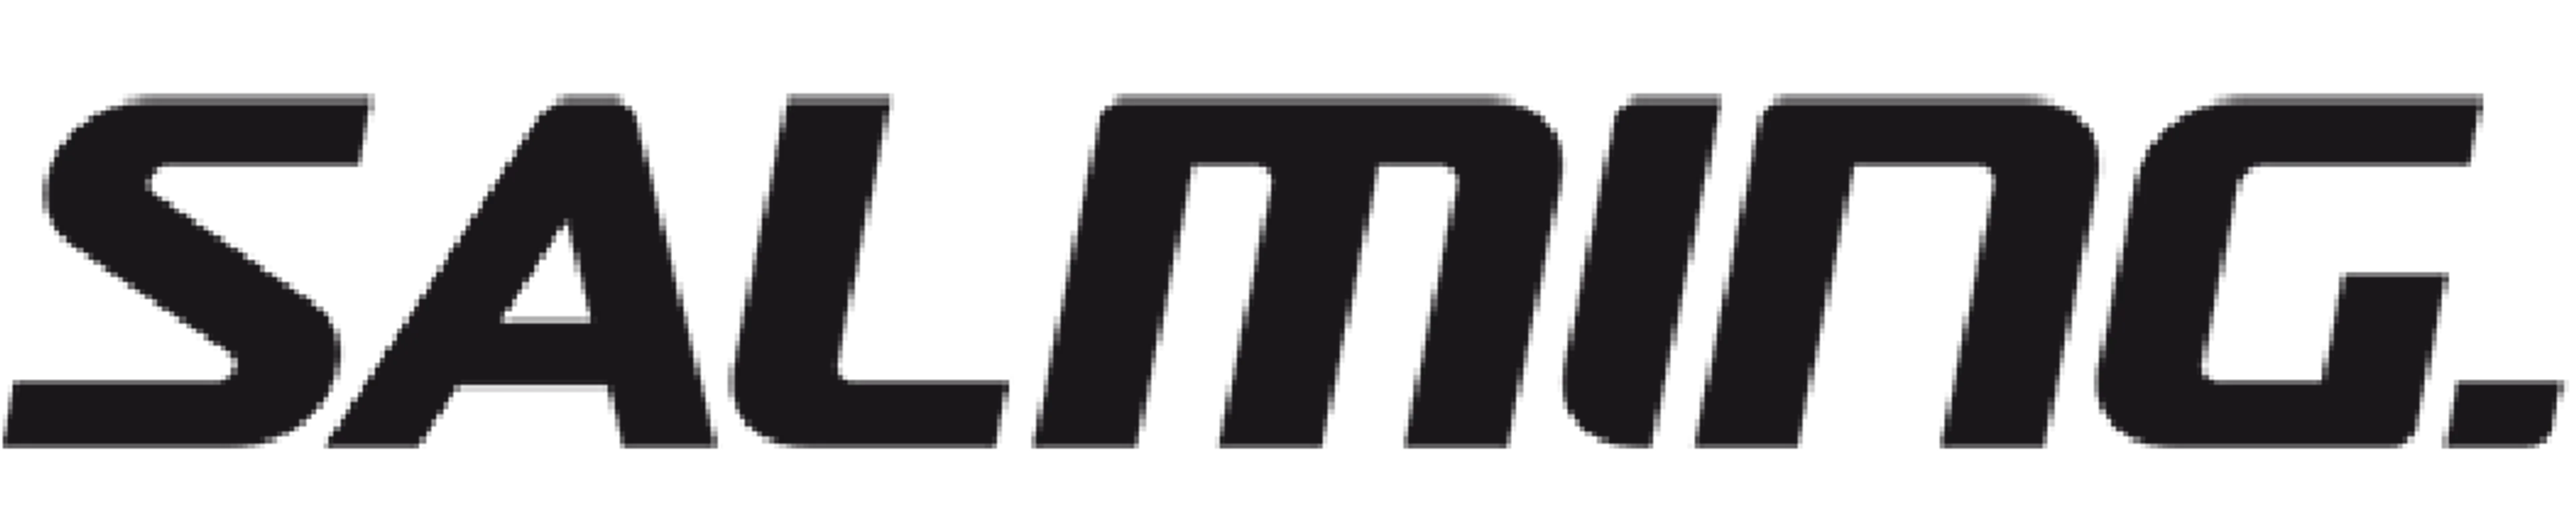 SALMING logo